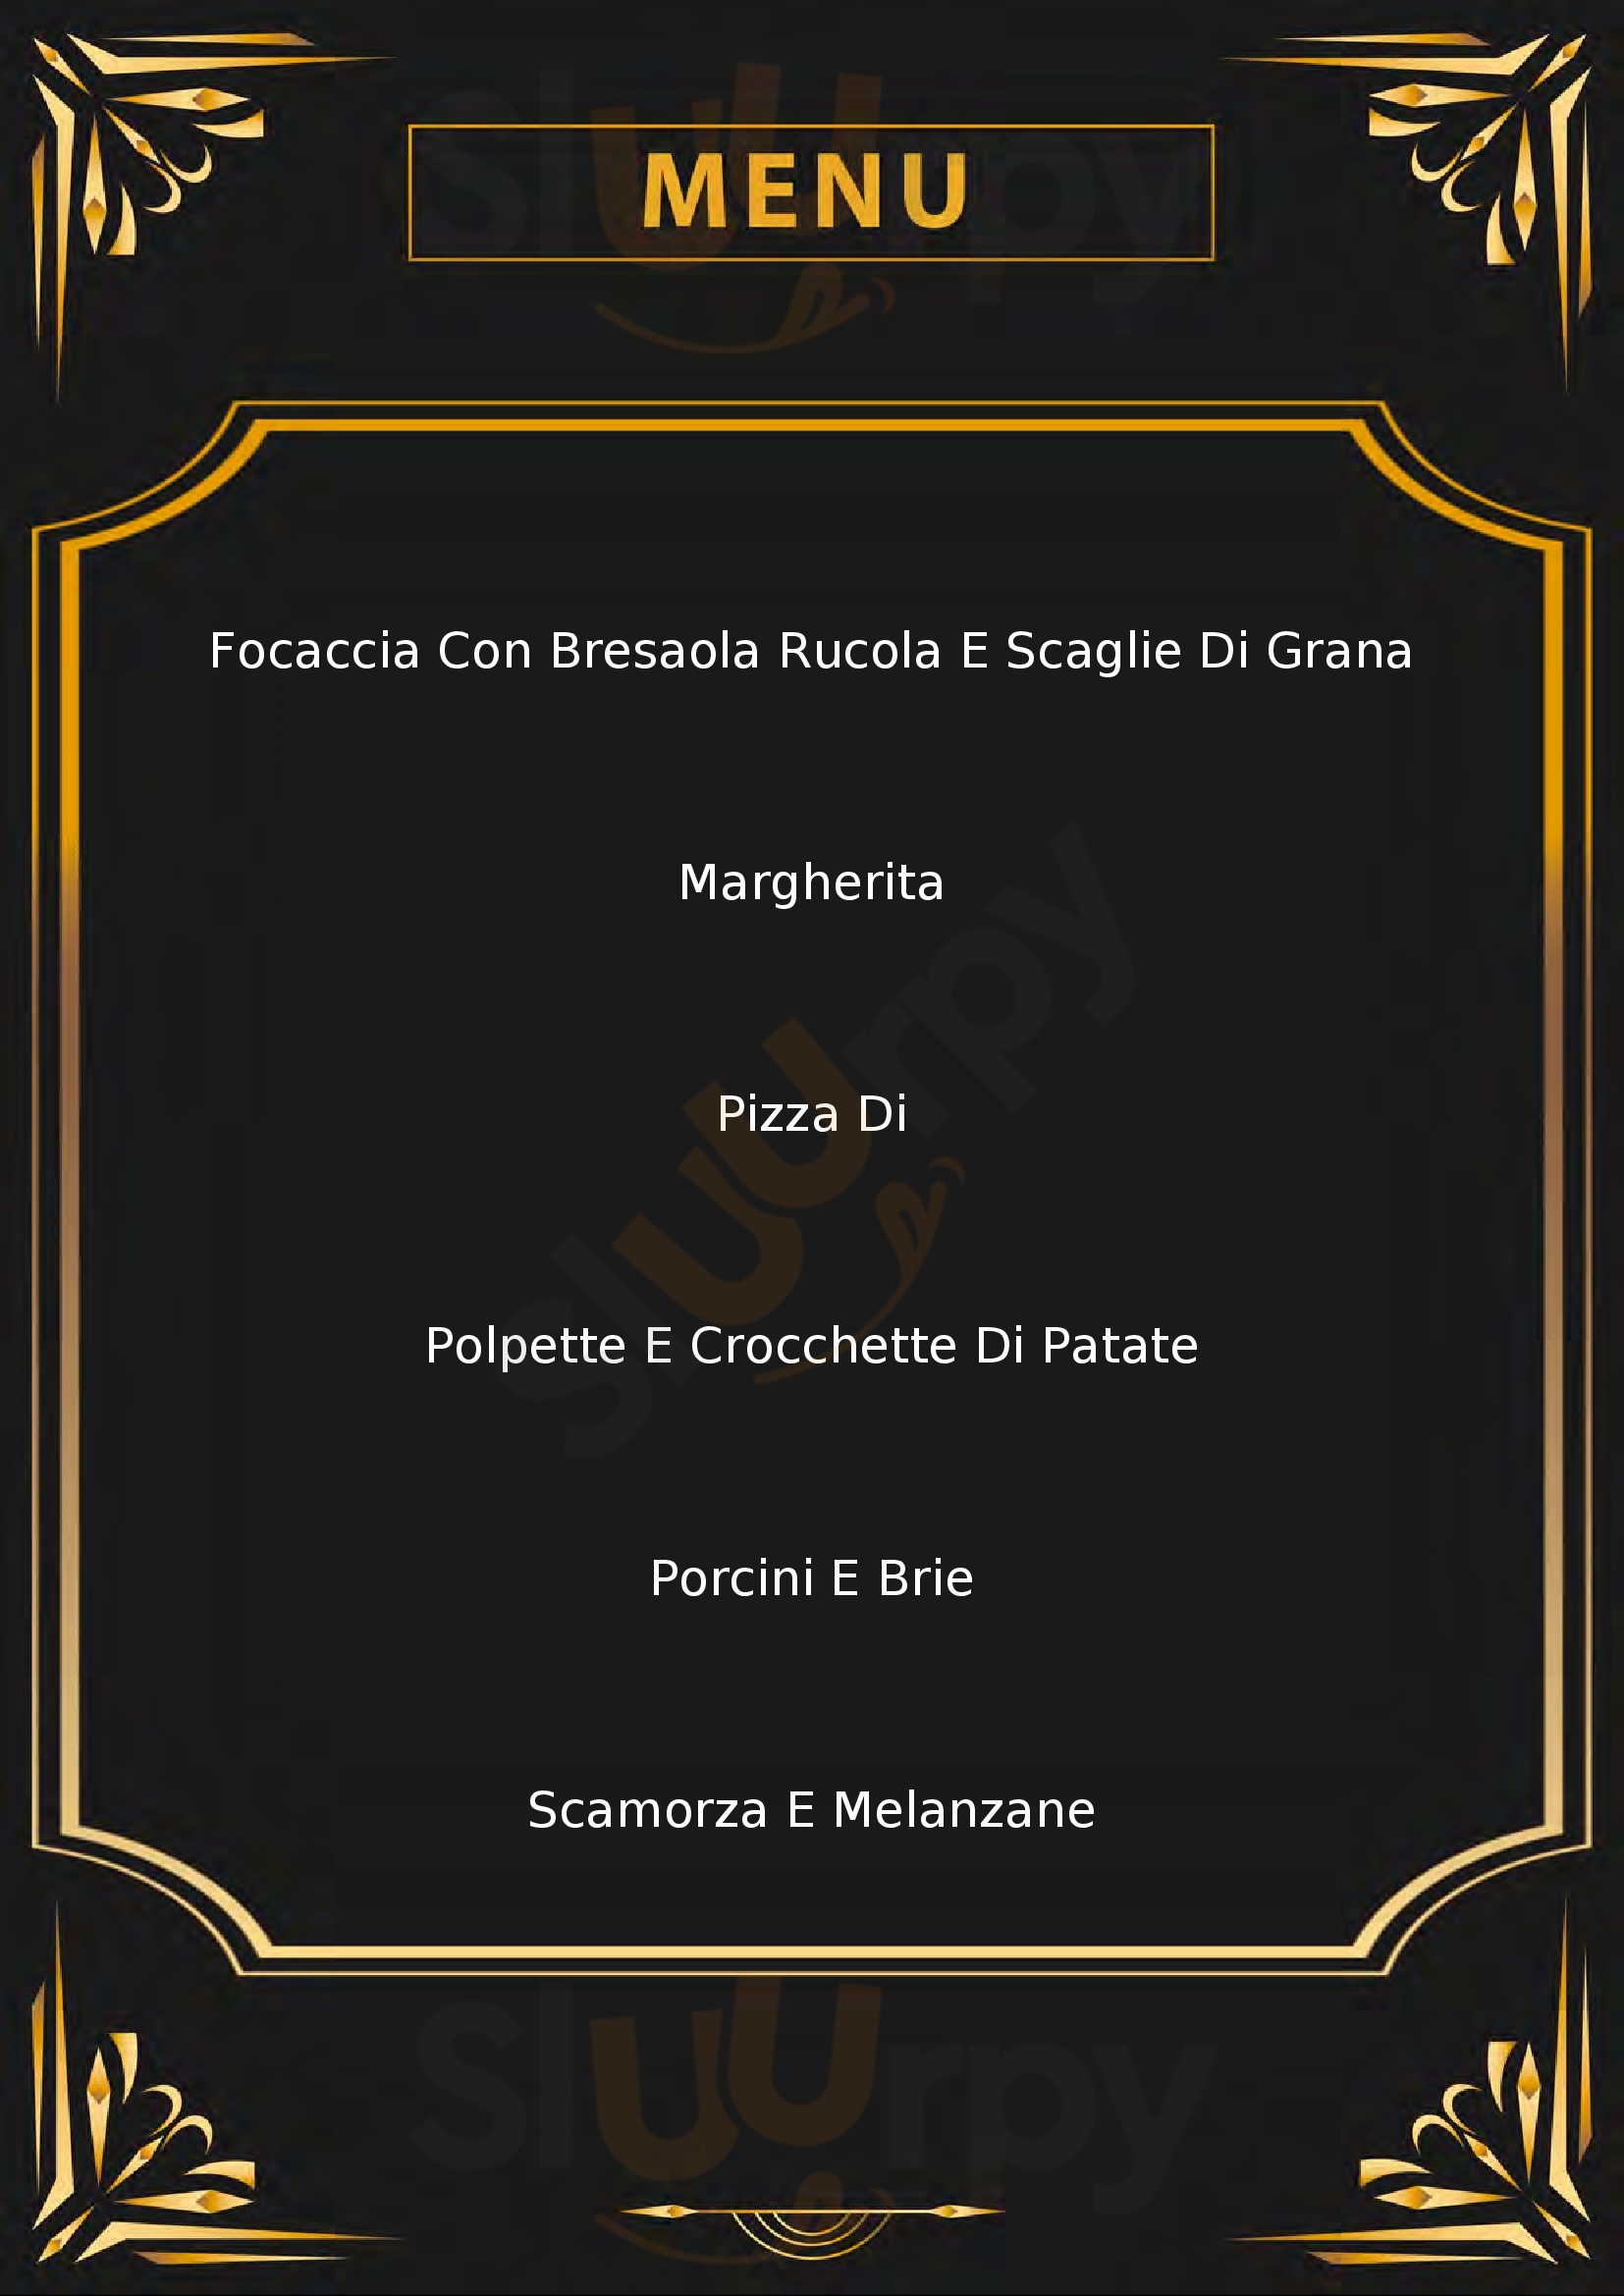 Pizzeria Rosticceria "Il Cortile" Martano menù 1 pagina